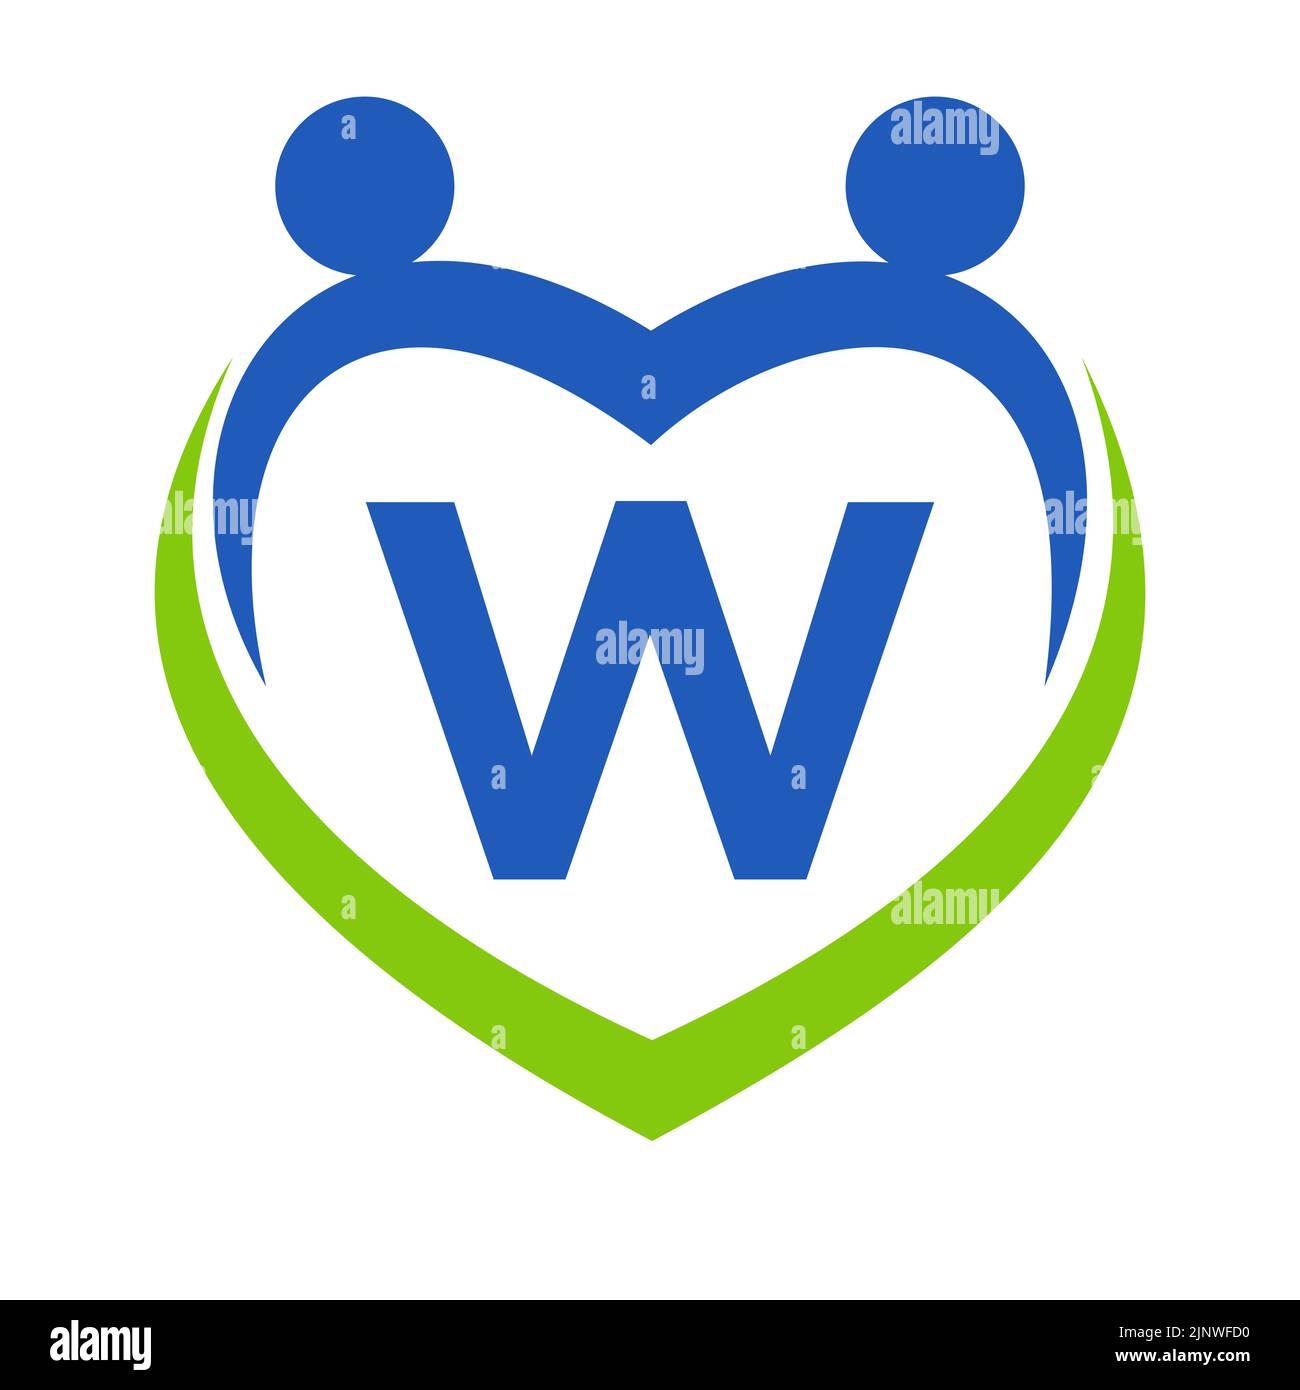 Vorlage für das Health Care Sign-on Letter W. Unity und Teamwork Logo Design. Logo der Stiftung für wohltätige Zwecke und Spenden Stock Vektor